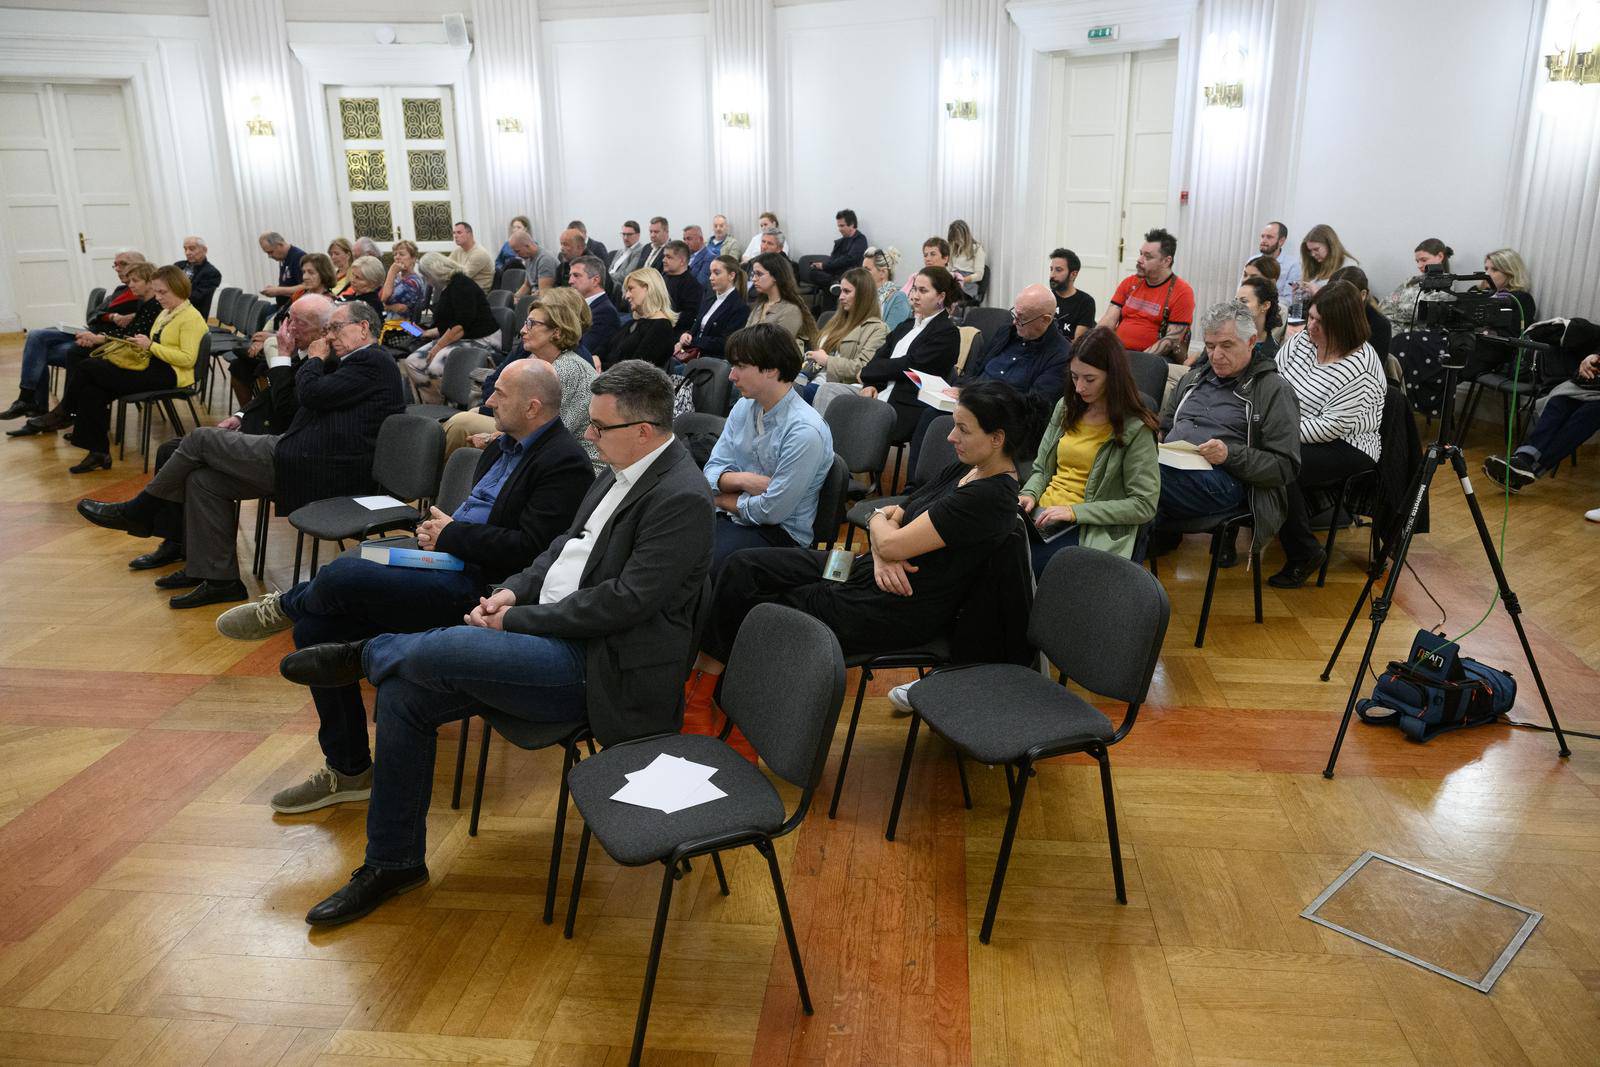 Zagreb: U Novinarskom domu održano je predstavljanje knjige "Tito" autora Borisa Rašete